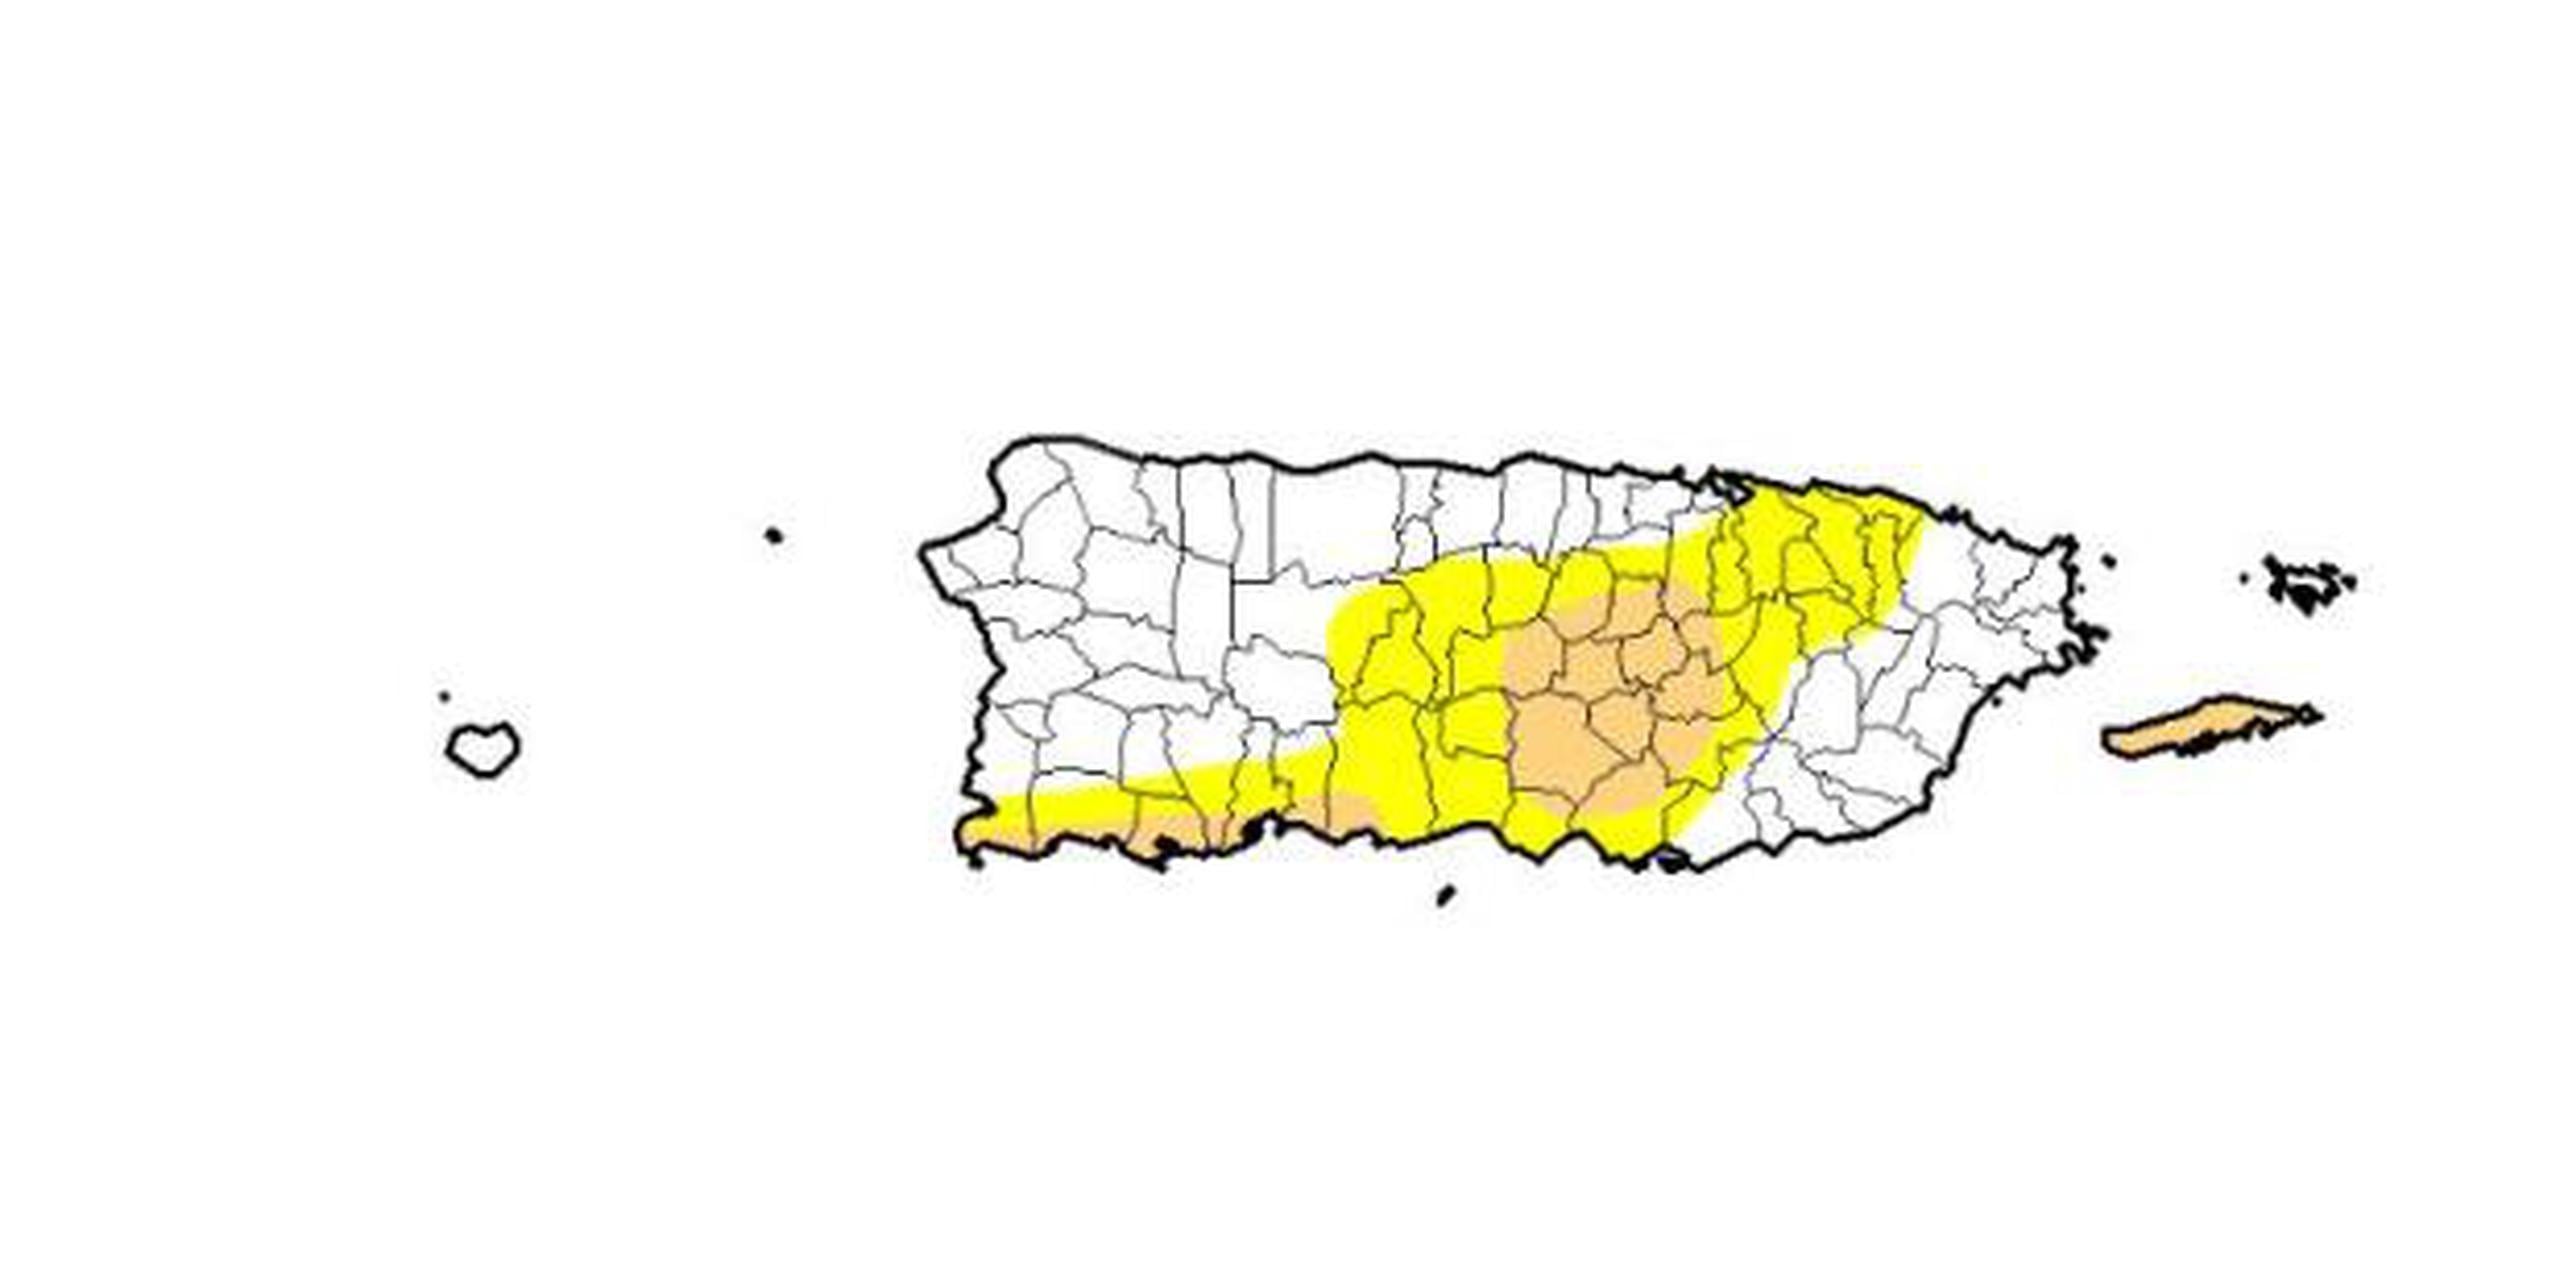 Un racionamiento estuvo afectando a 70,000 personas que se suplen del embalse de Guajataca, en el noroeste de la isla. (droughtmonitor)